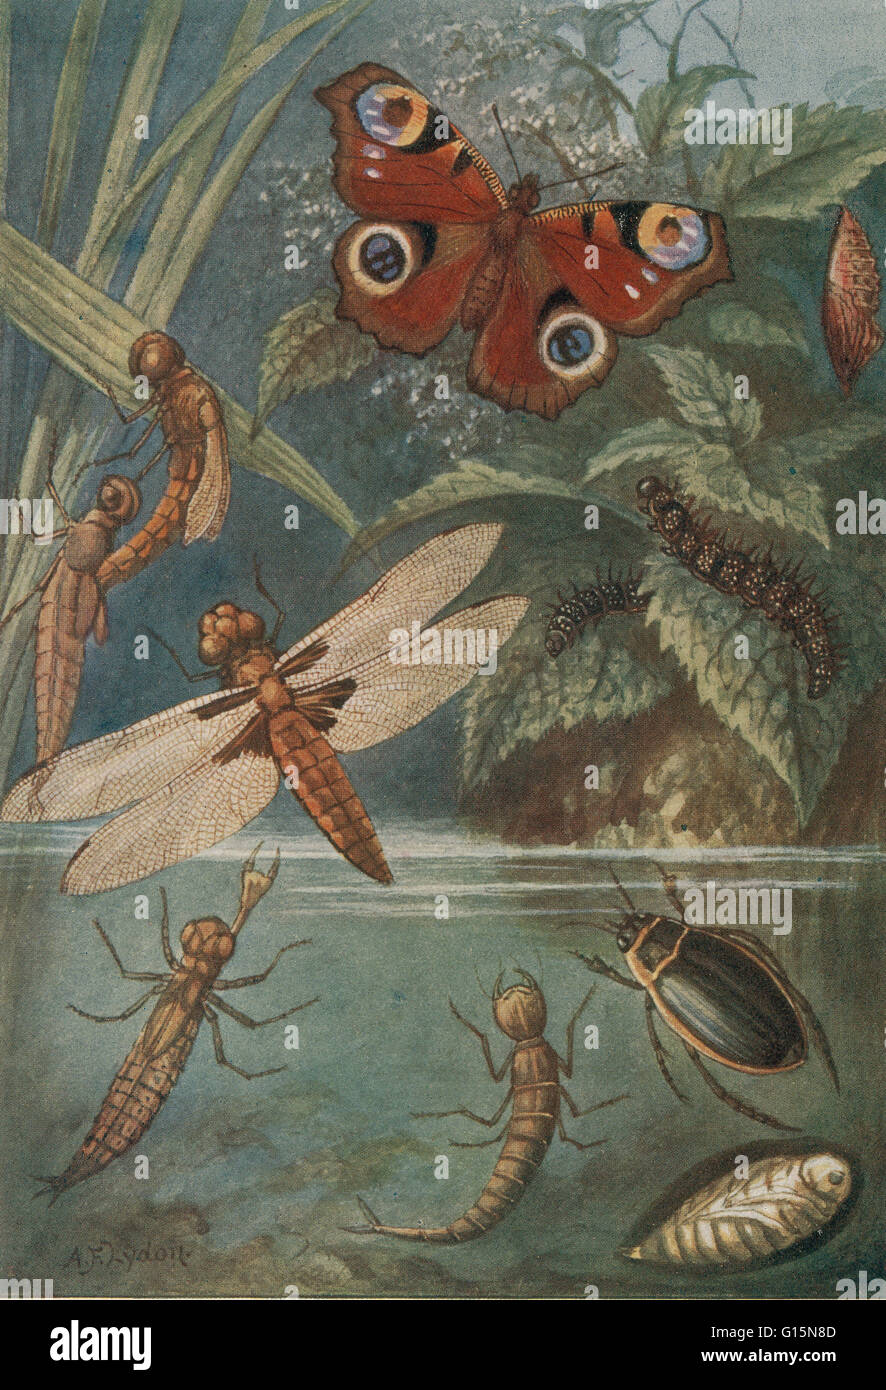 Unter dem Titel: Metamorphosen, Leben Zyklus der Insekten. (1) Libelle, Larve (2), (3) Insekt aus Nymphe Dragonlfy, (4) perfekte Insekten, Raupen (5), (6) die Puppe eines Schmetterlings, Vanessa Io (7) perfekte Insekt, (8) Larve, Nymphe (9) ein Wasser-Rüben Stockfoto